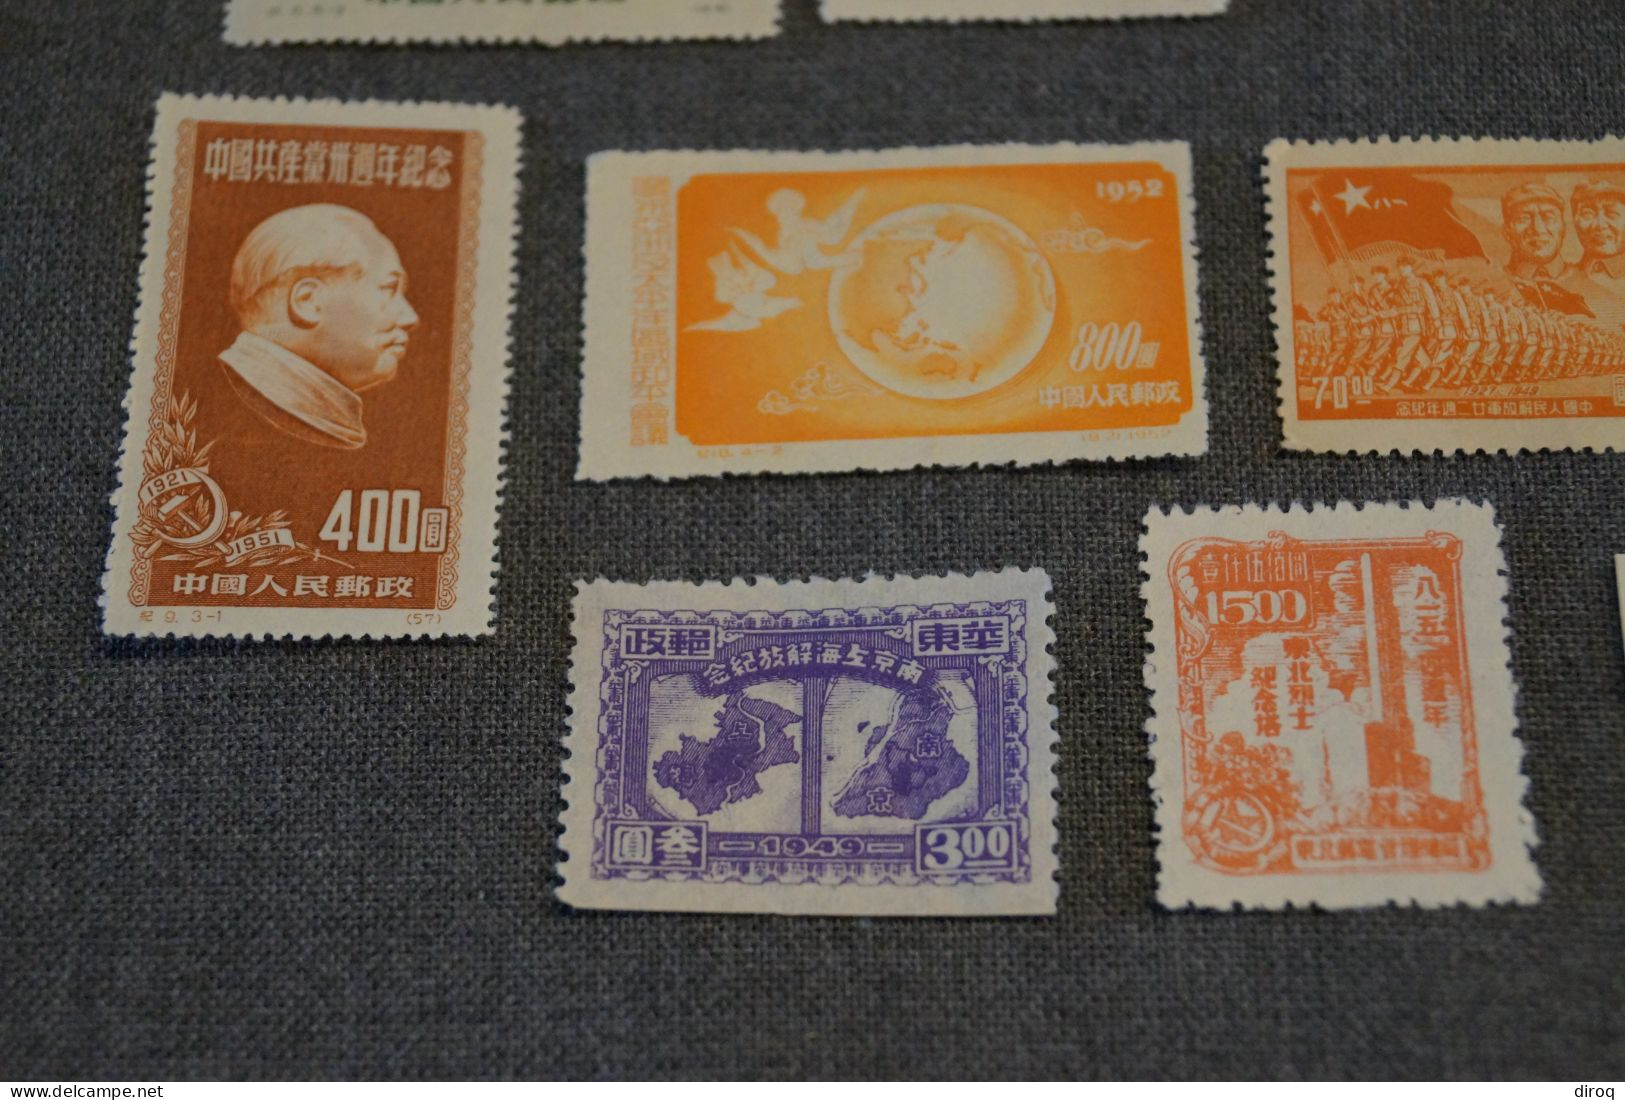 RARE, Chines , Chine , lot de 18 timbres neuf,très bel état pour collection